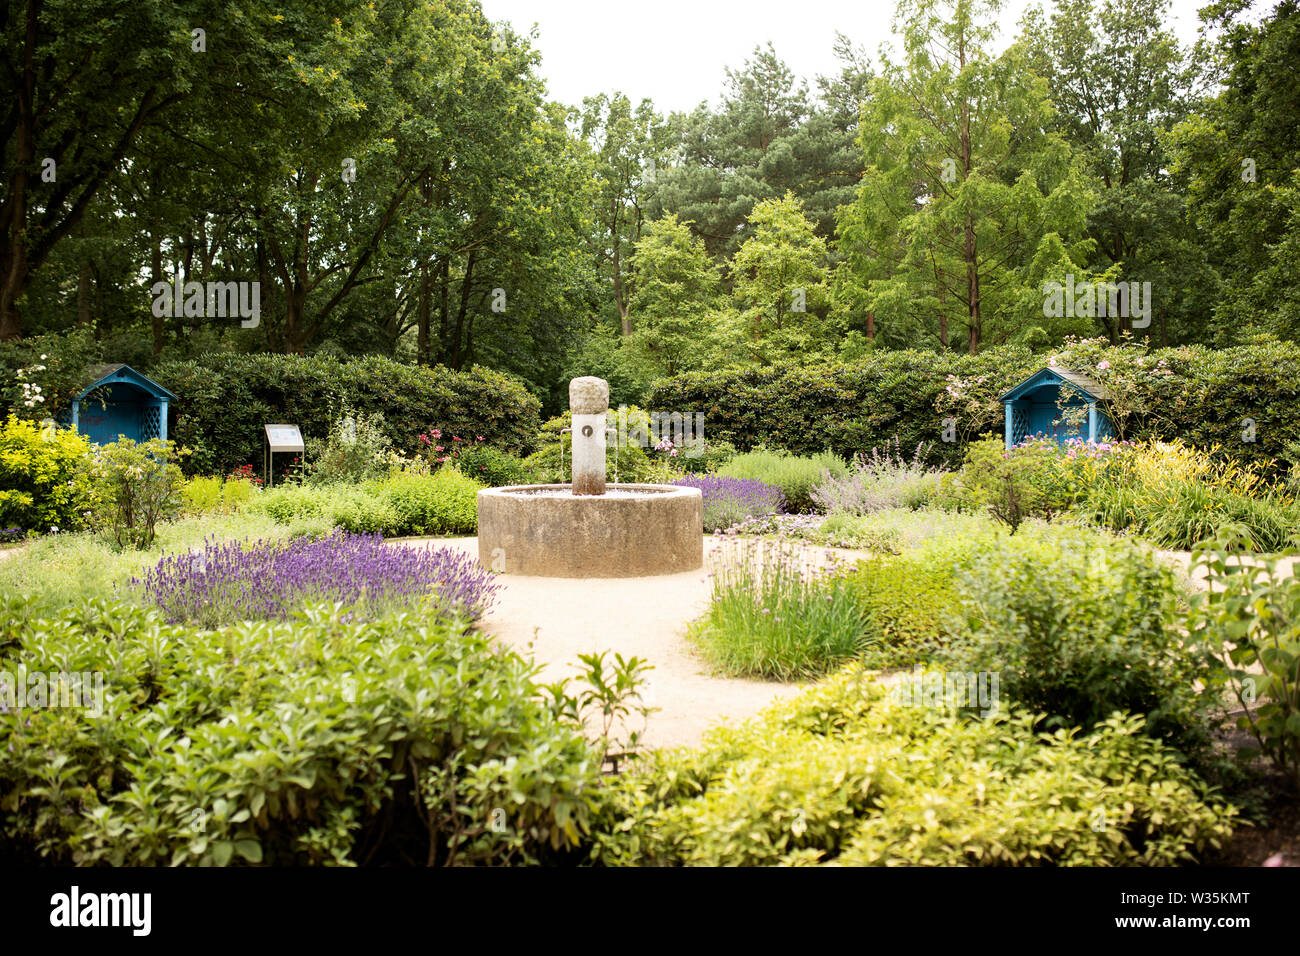 El aroma o fragancia Duftgarten (garden) es un jardín de los sentidos en el Rhododendron Park en Bremen, Alemania. Foto de stock